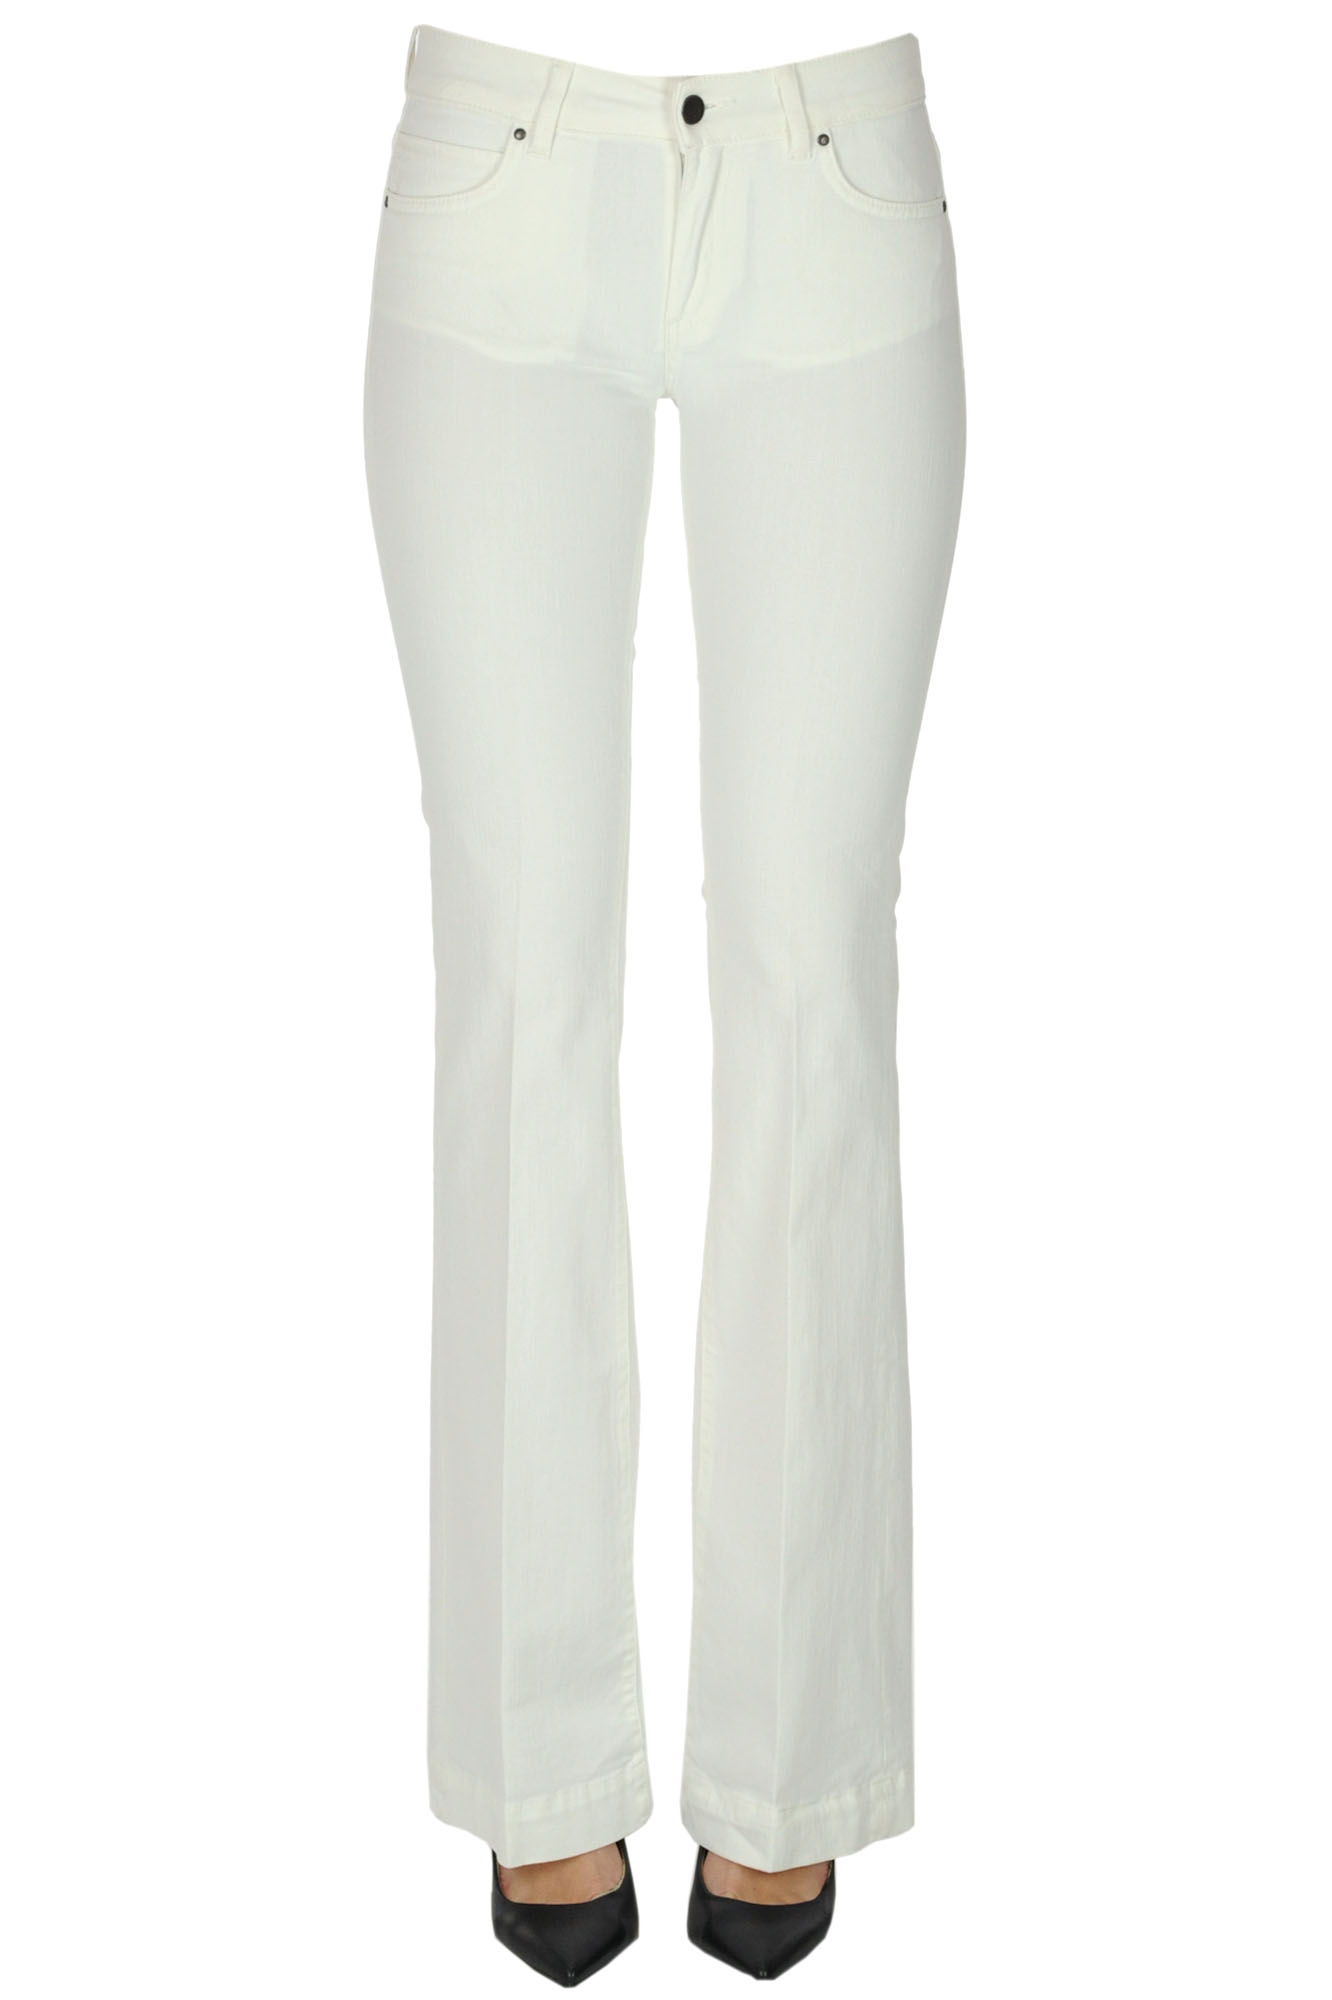 Atelier Cigala's Wide Leg Jeans In White